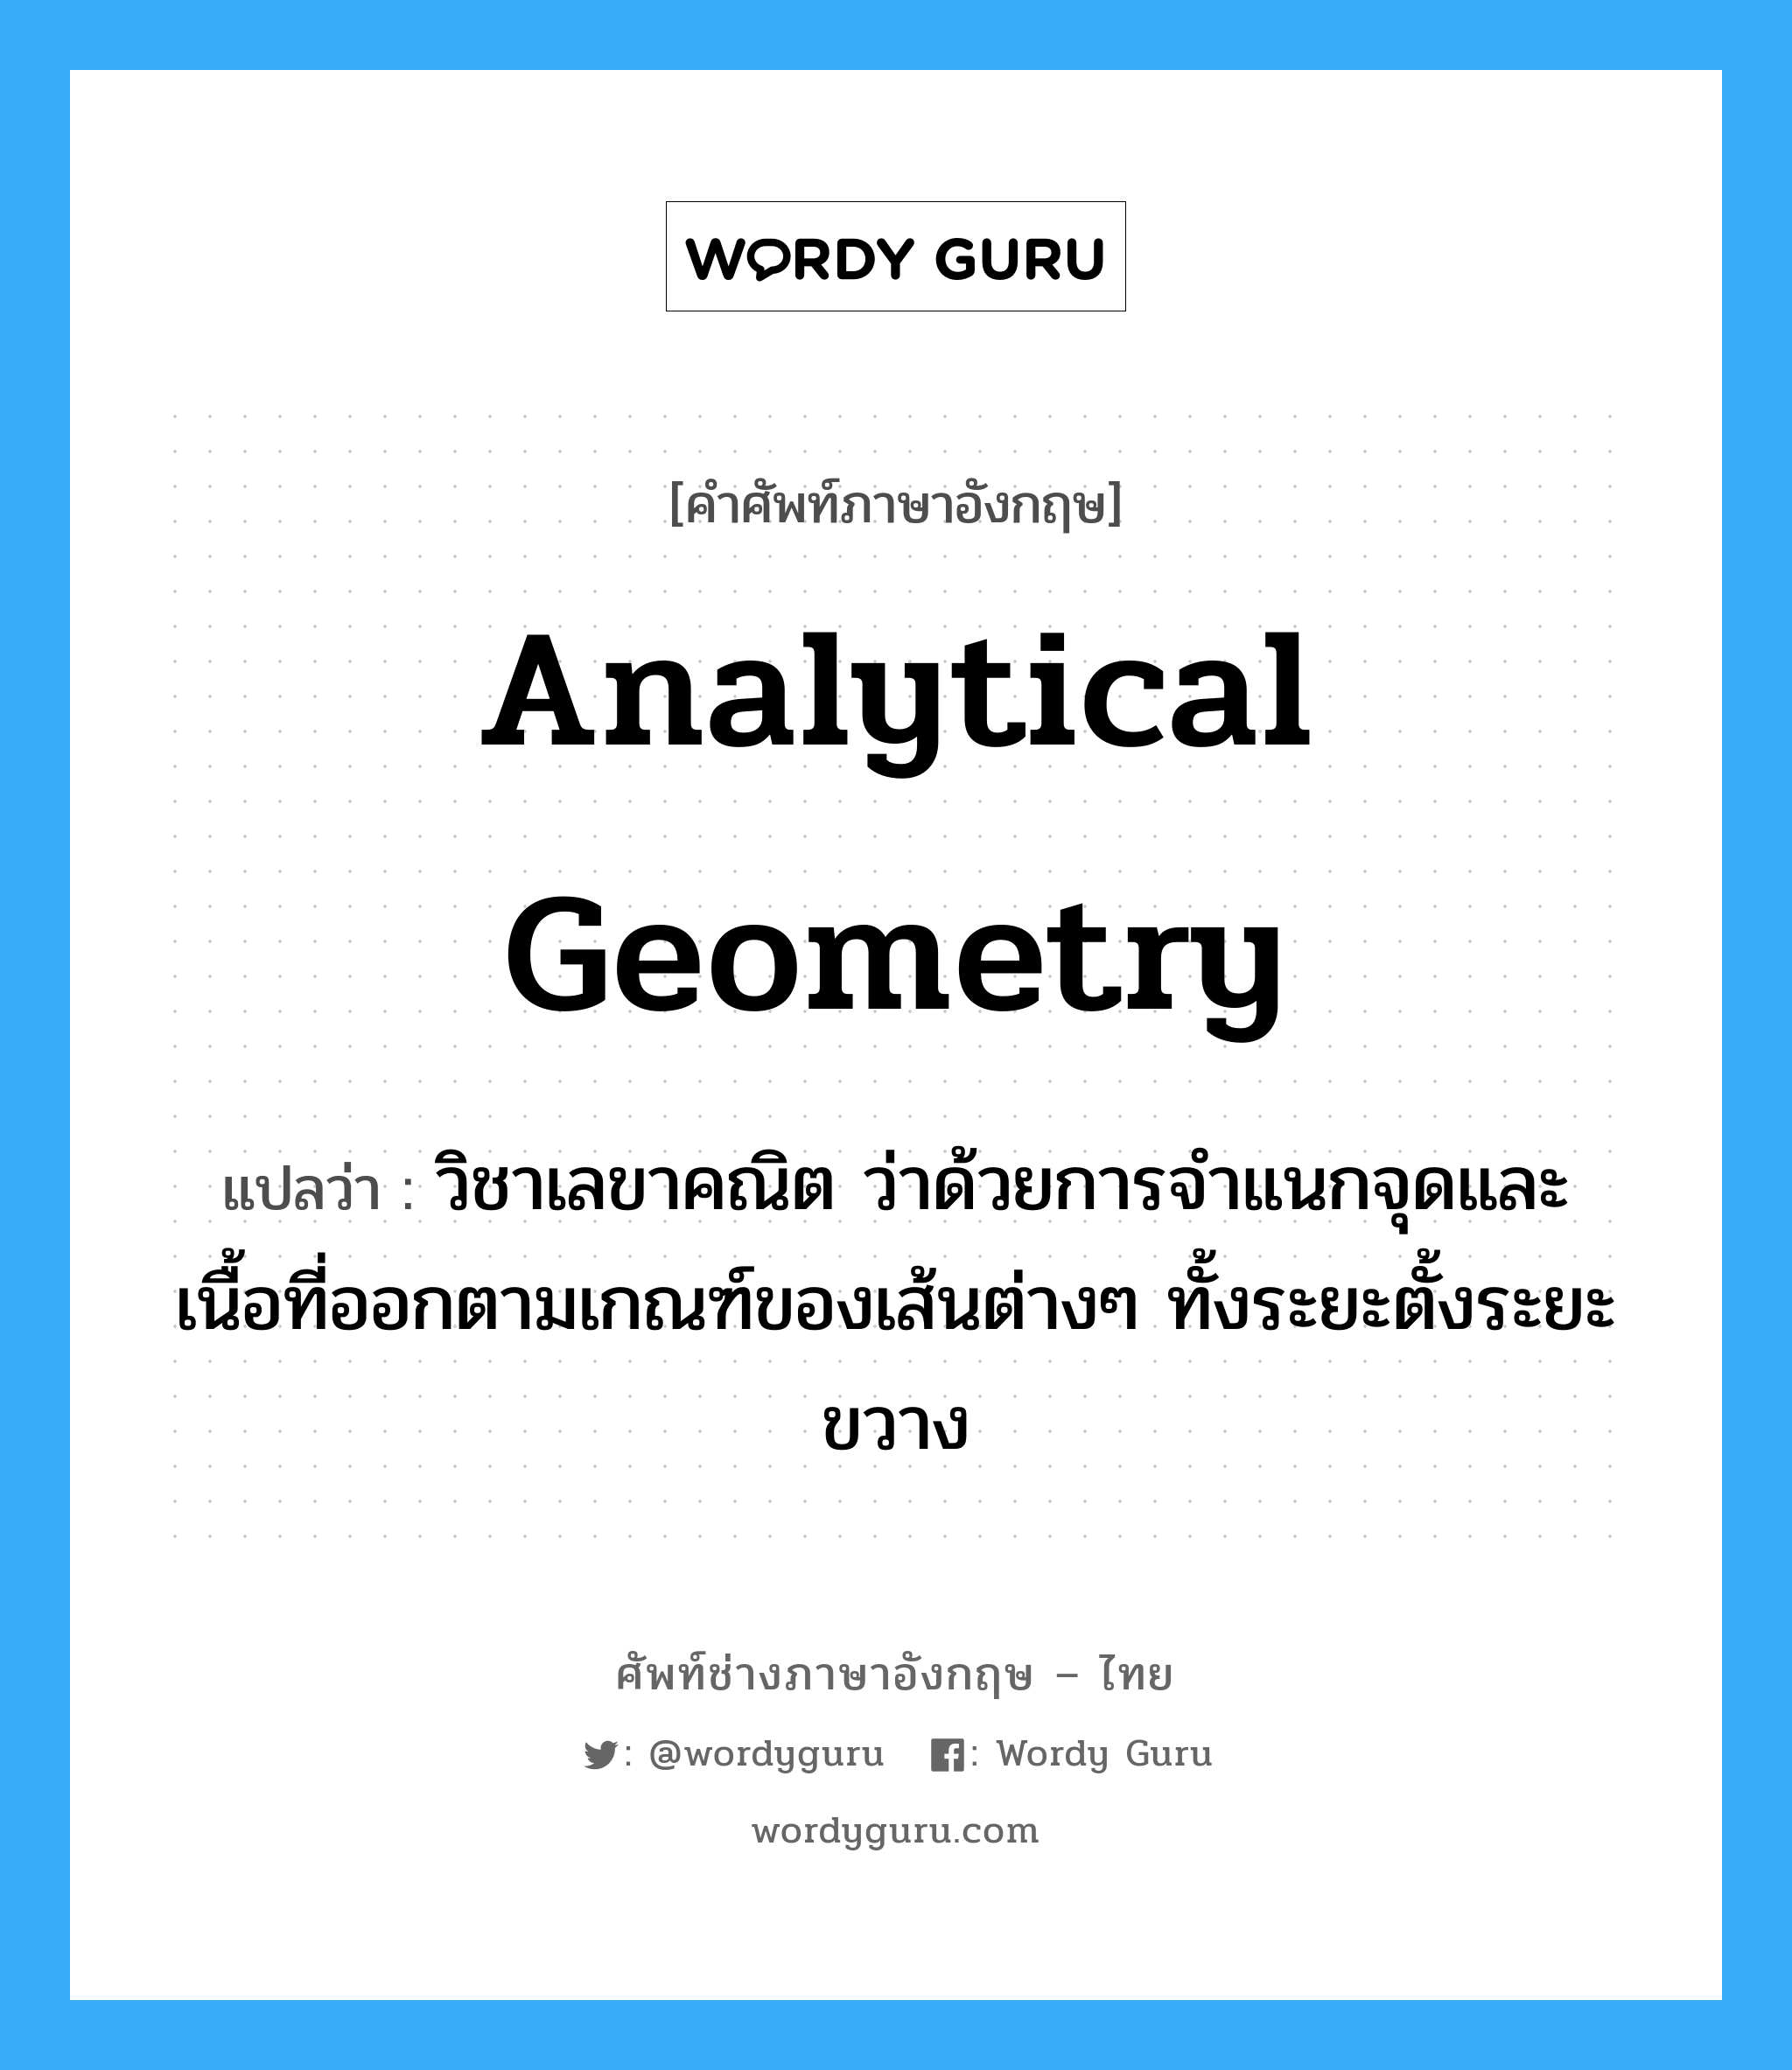 analytical geometry แปลว่า?, คำศัพท์ช่างภาษาอังกฤษ - ไทย analytical geometry คำศัพท์ภาษาอังกฤษ analytical geometry แปลว่า วิชาเลขาคณิต ว่าด้วยการจำแนกจุดและเนื้อที่ออกตามเกณฑ์ของเส้นต่างๆ ทั้งระยะตั้งระยะขวาง